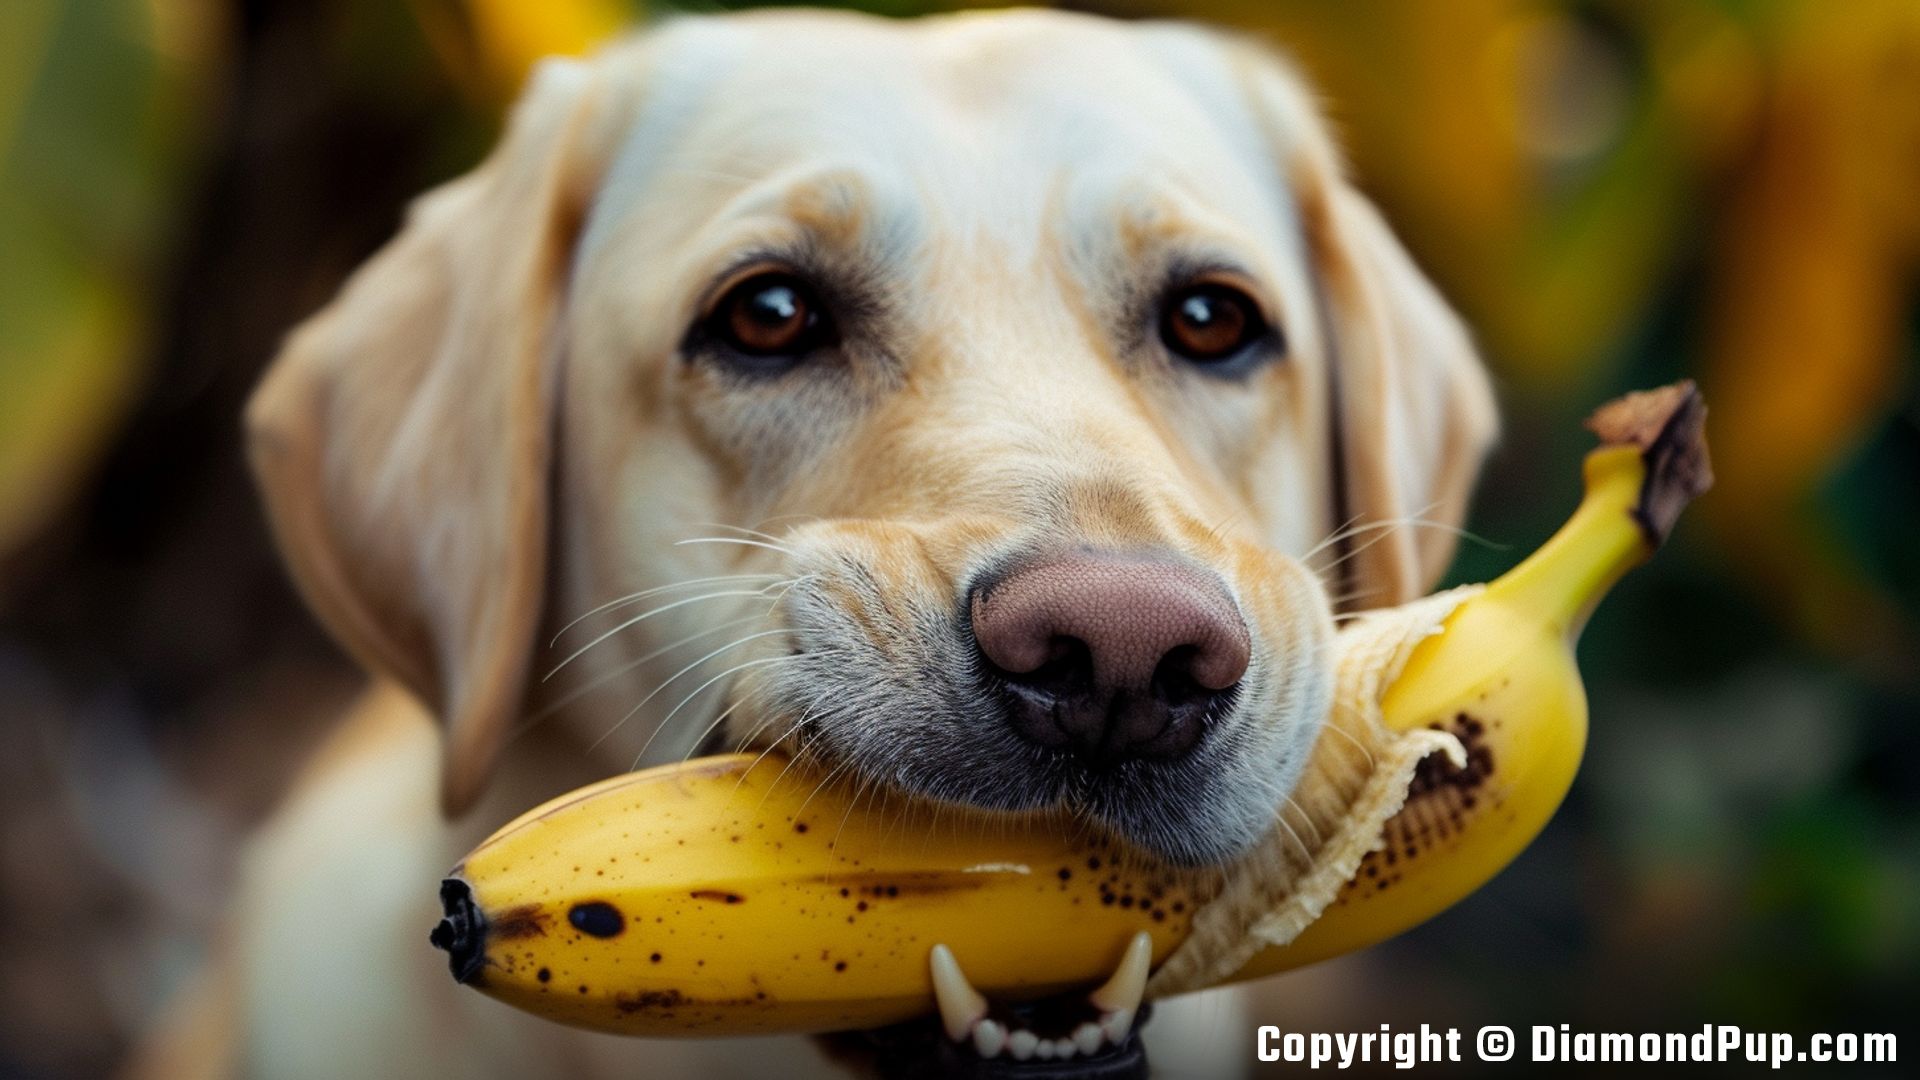 Photo of a Cute Labrador Eating Banana